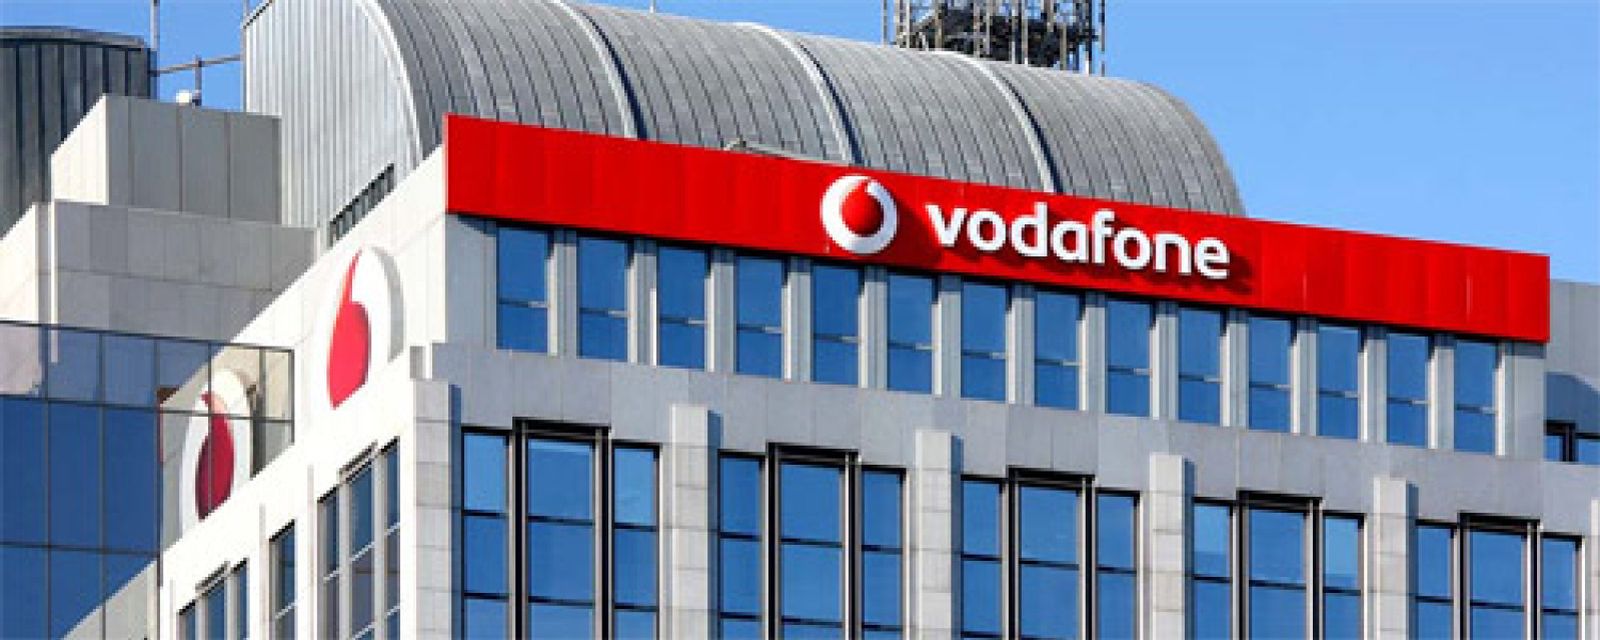 Foto: Vodafone: “Las mujeres, como el WiFi, miran los dispositivos y se conectan al más fuerte”